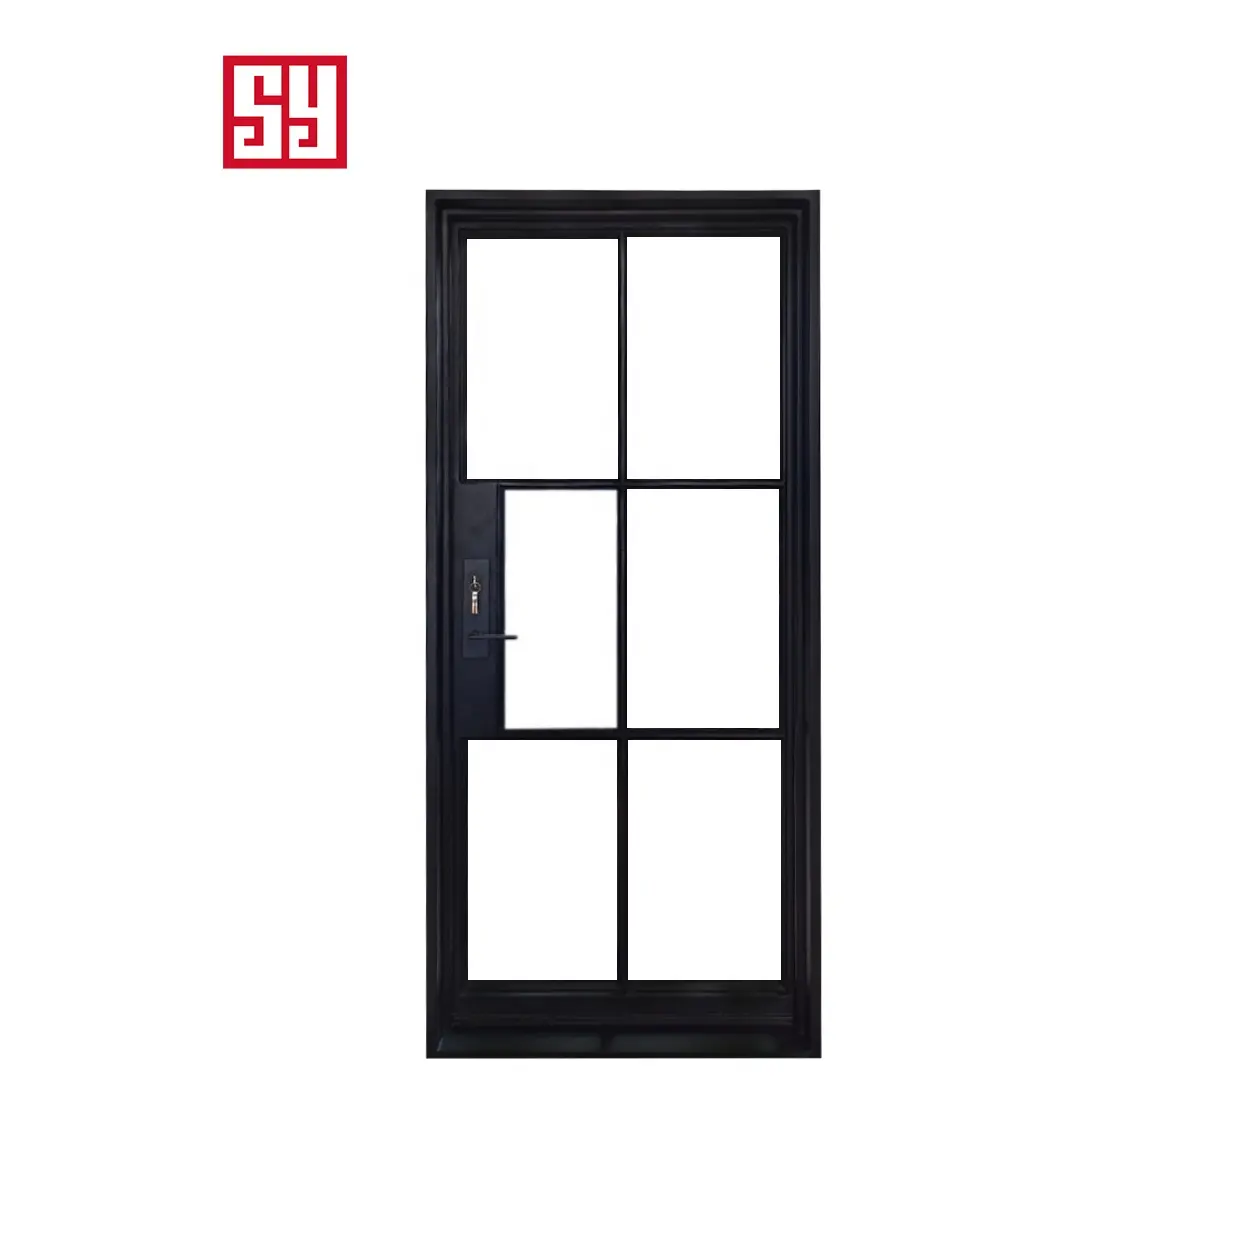 Современная минималистская Роскошная дверь из кованого железа во французском стиле, стальная стеклянная дверь для спальни с графическим дизайном